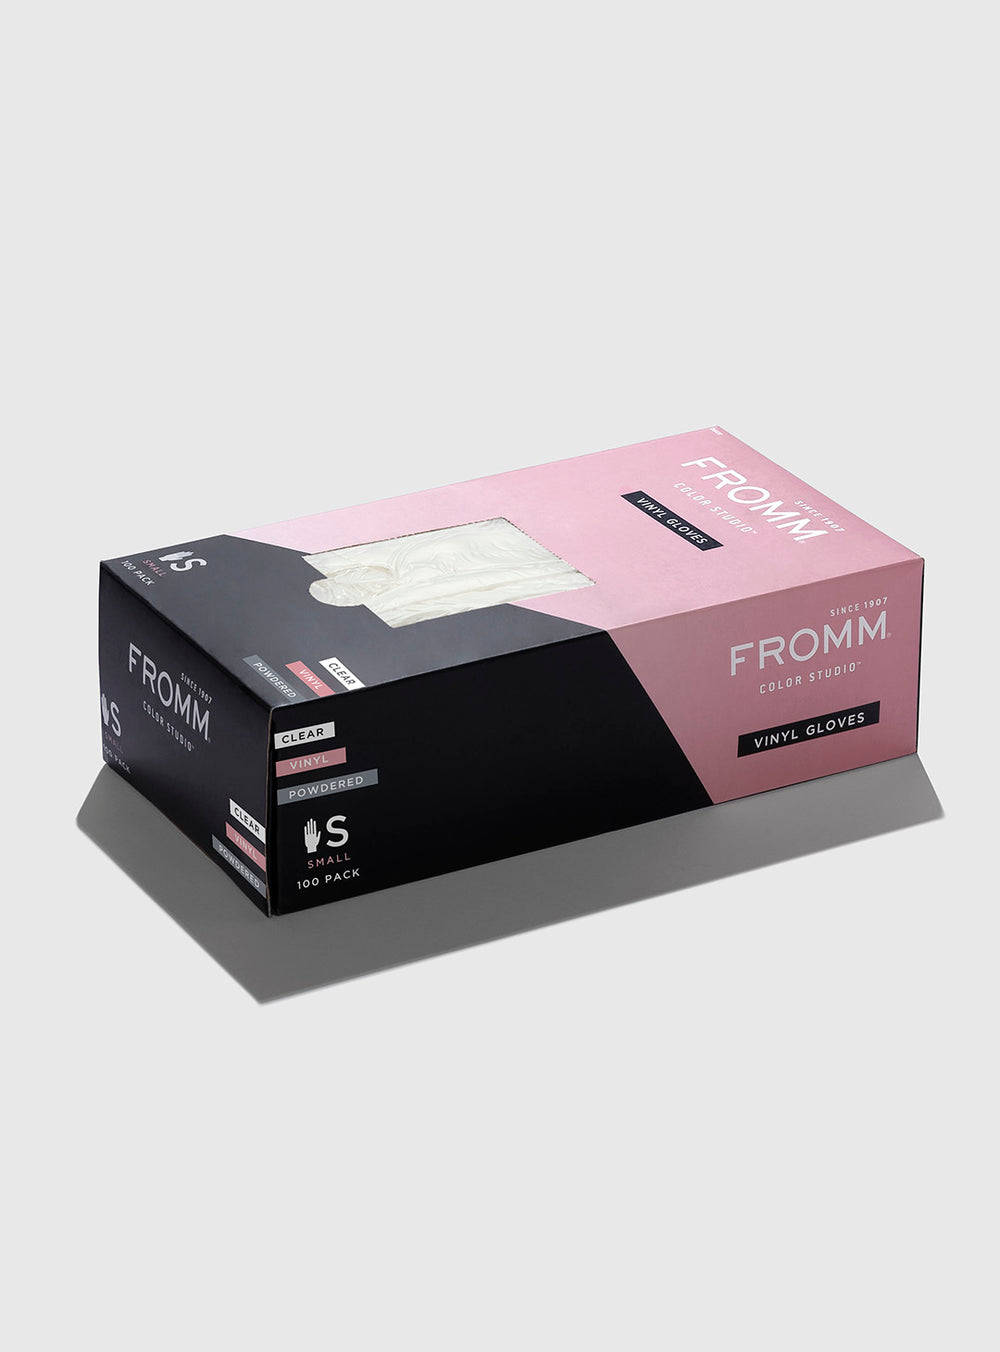 FROMM Vinyl Powdered Glove 100 Pack